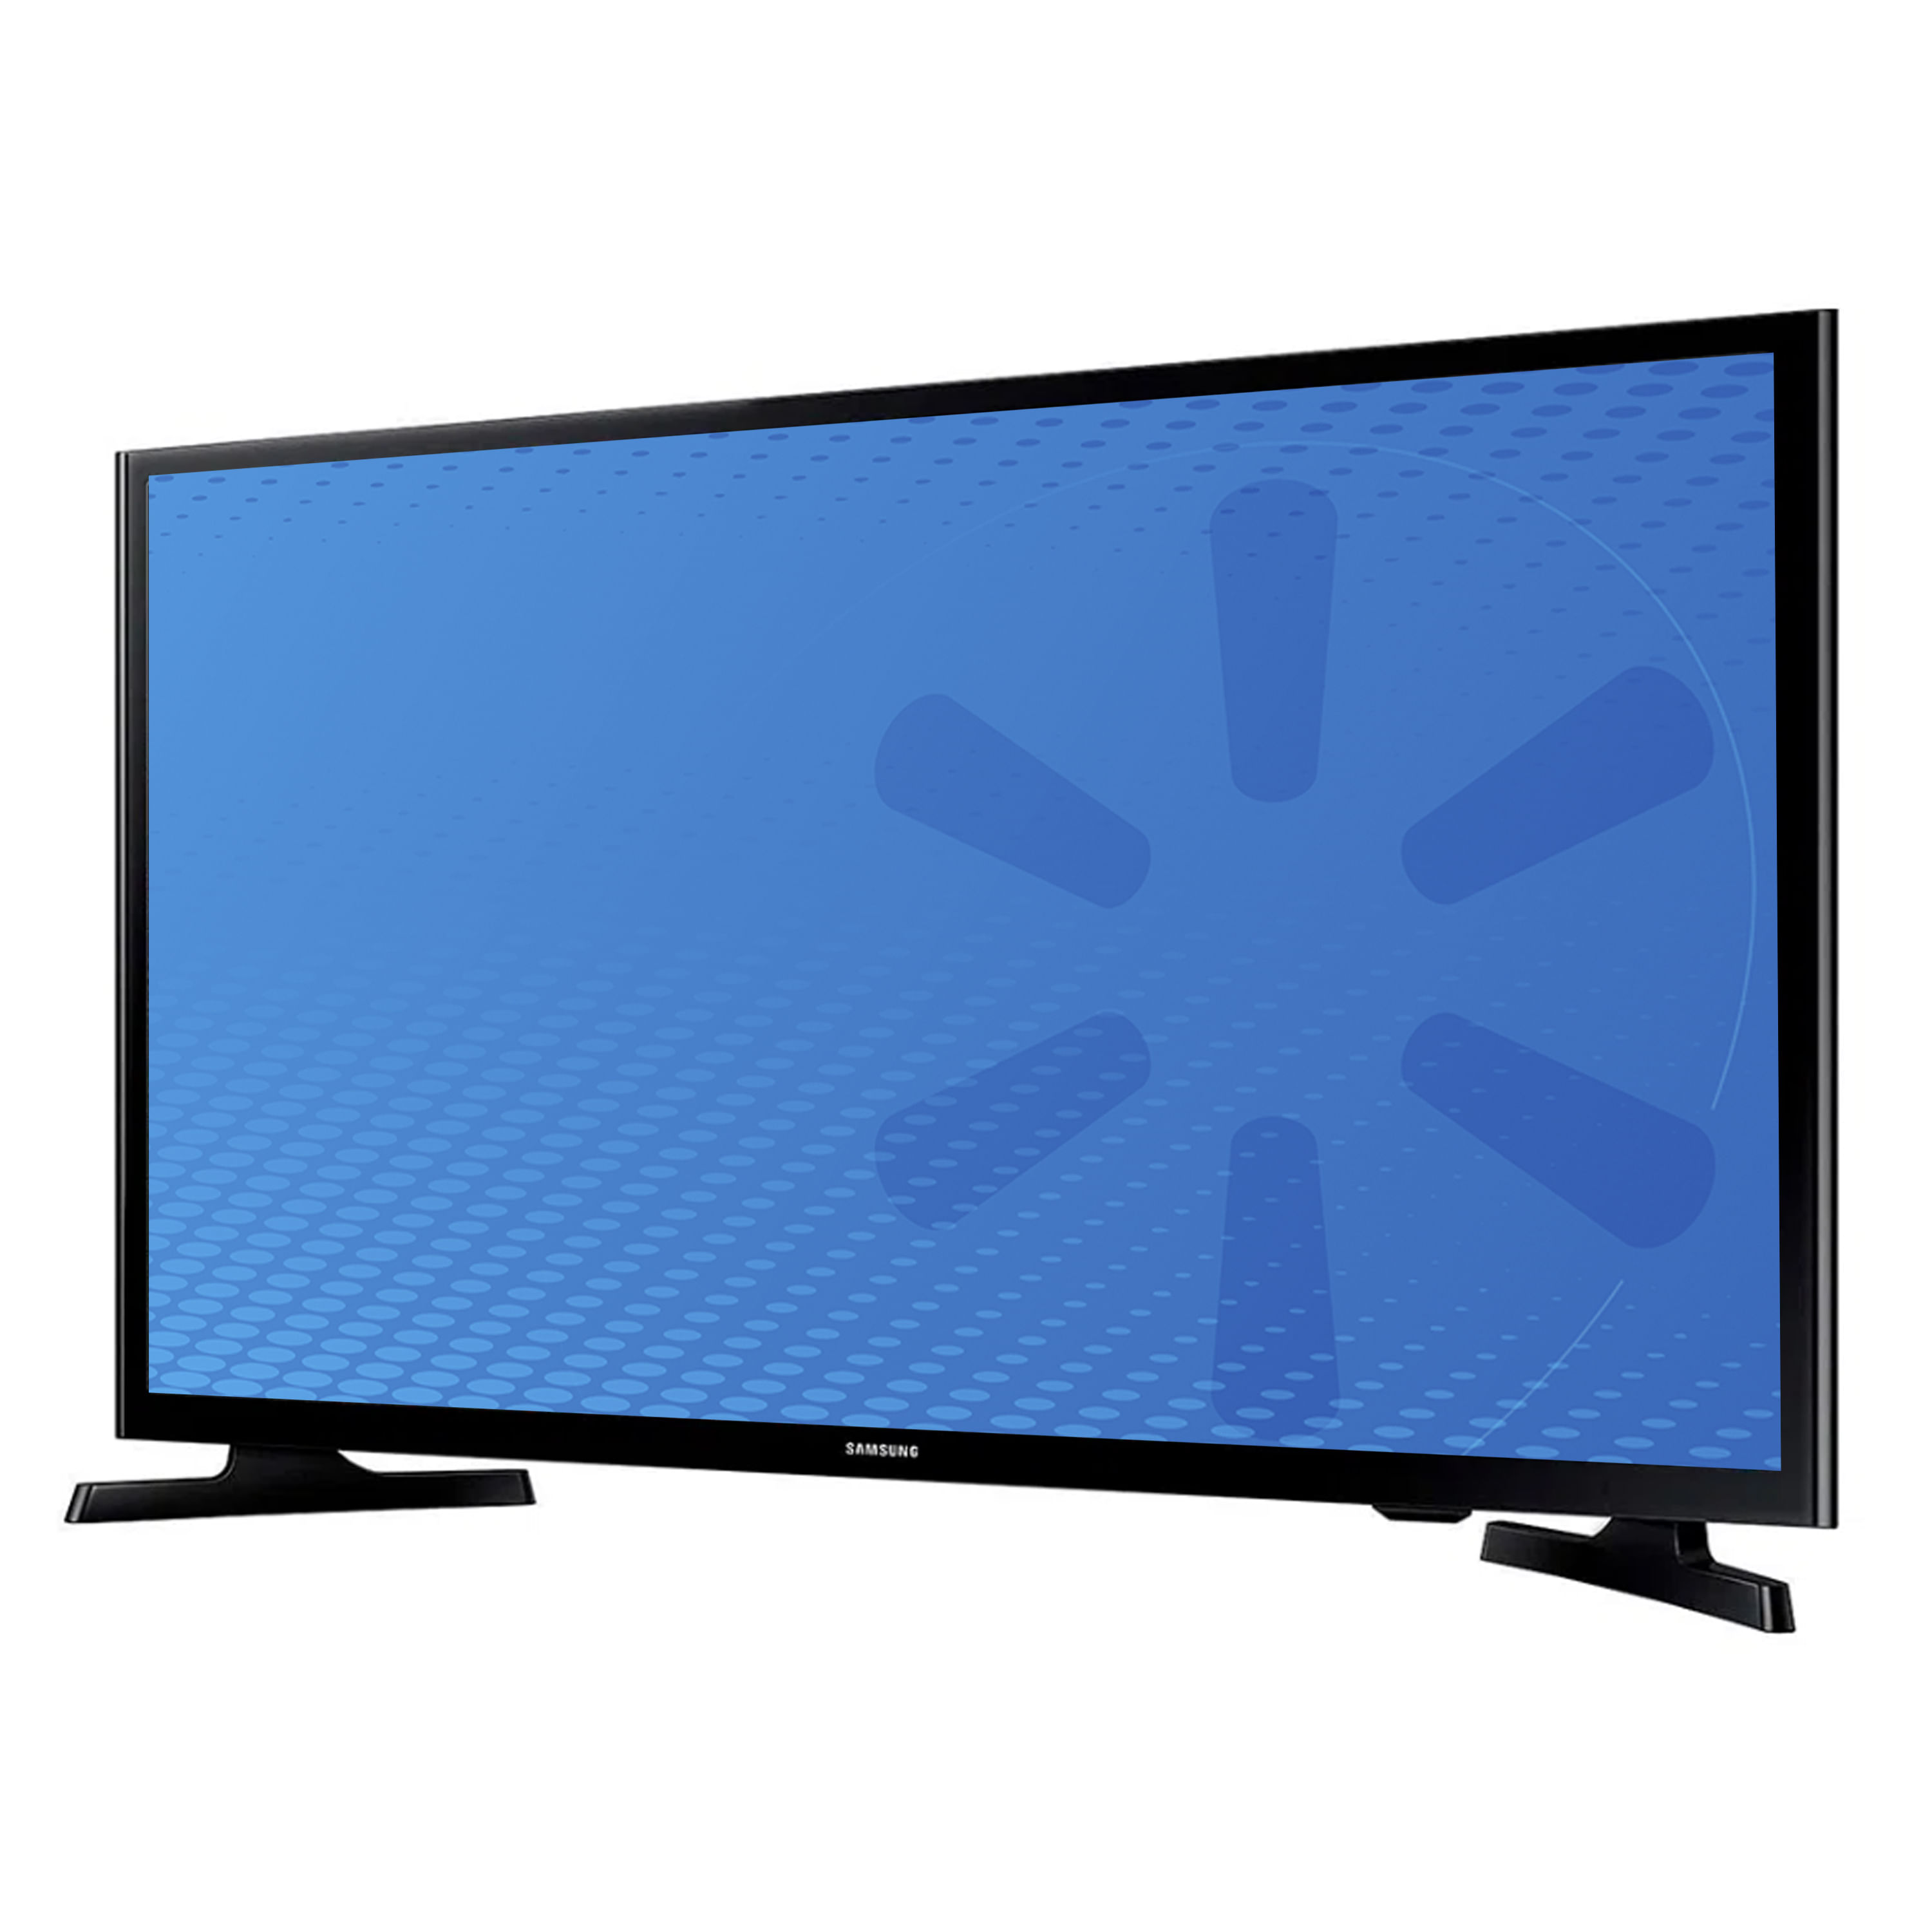 Comprar Pantalla Smart TV 4K Samsung Led De 55 Pulgadas Modelo: UN55AU7000, Walmart Guatemala - Maxi Despensa